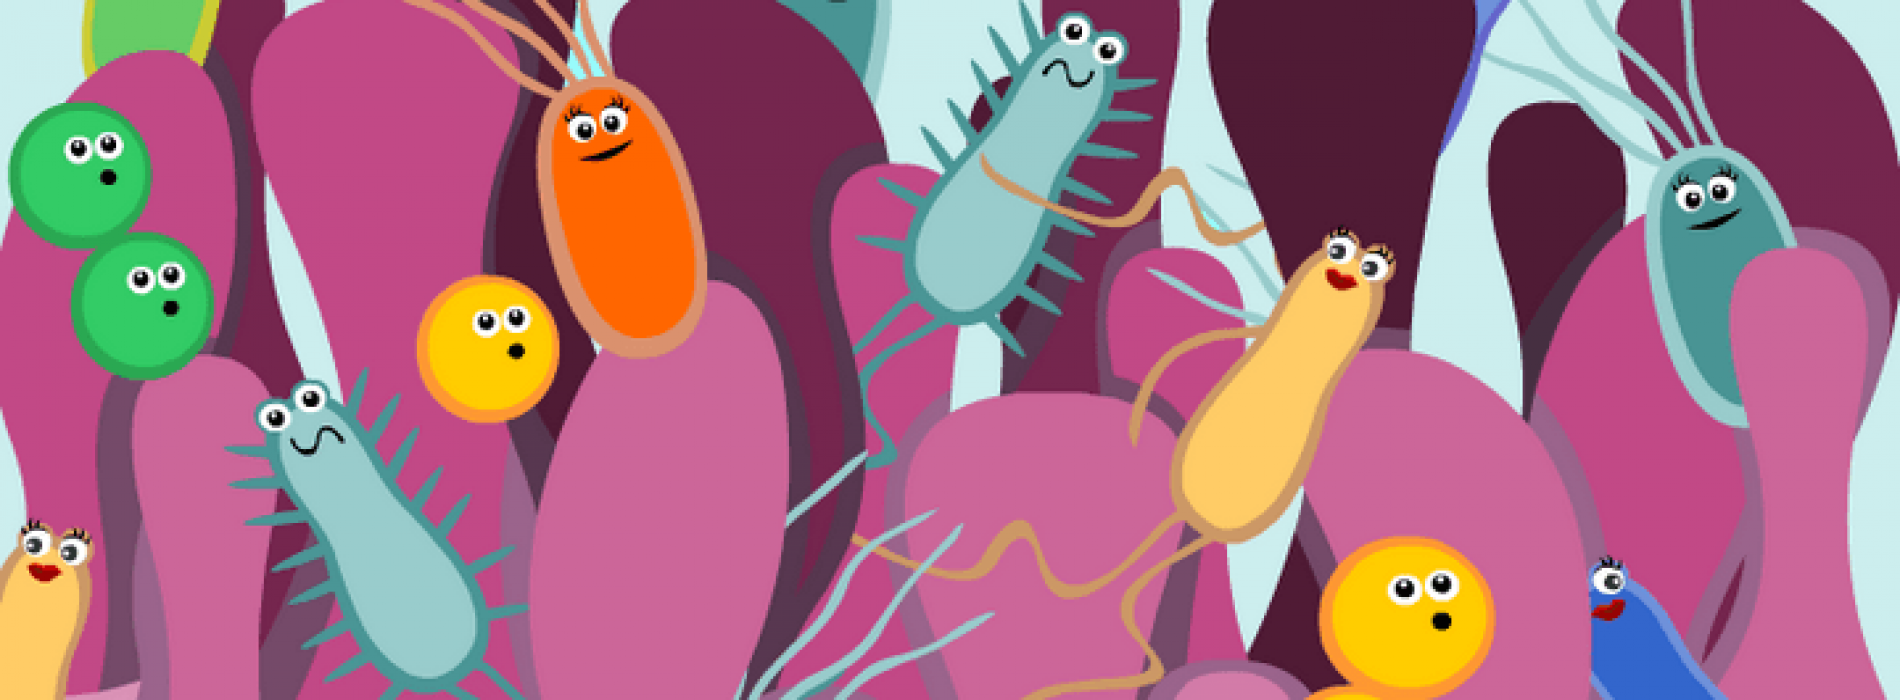 Darmbacteriën lijken de controle te hebben over onze emoties. Deze verrassende studie toont het verband